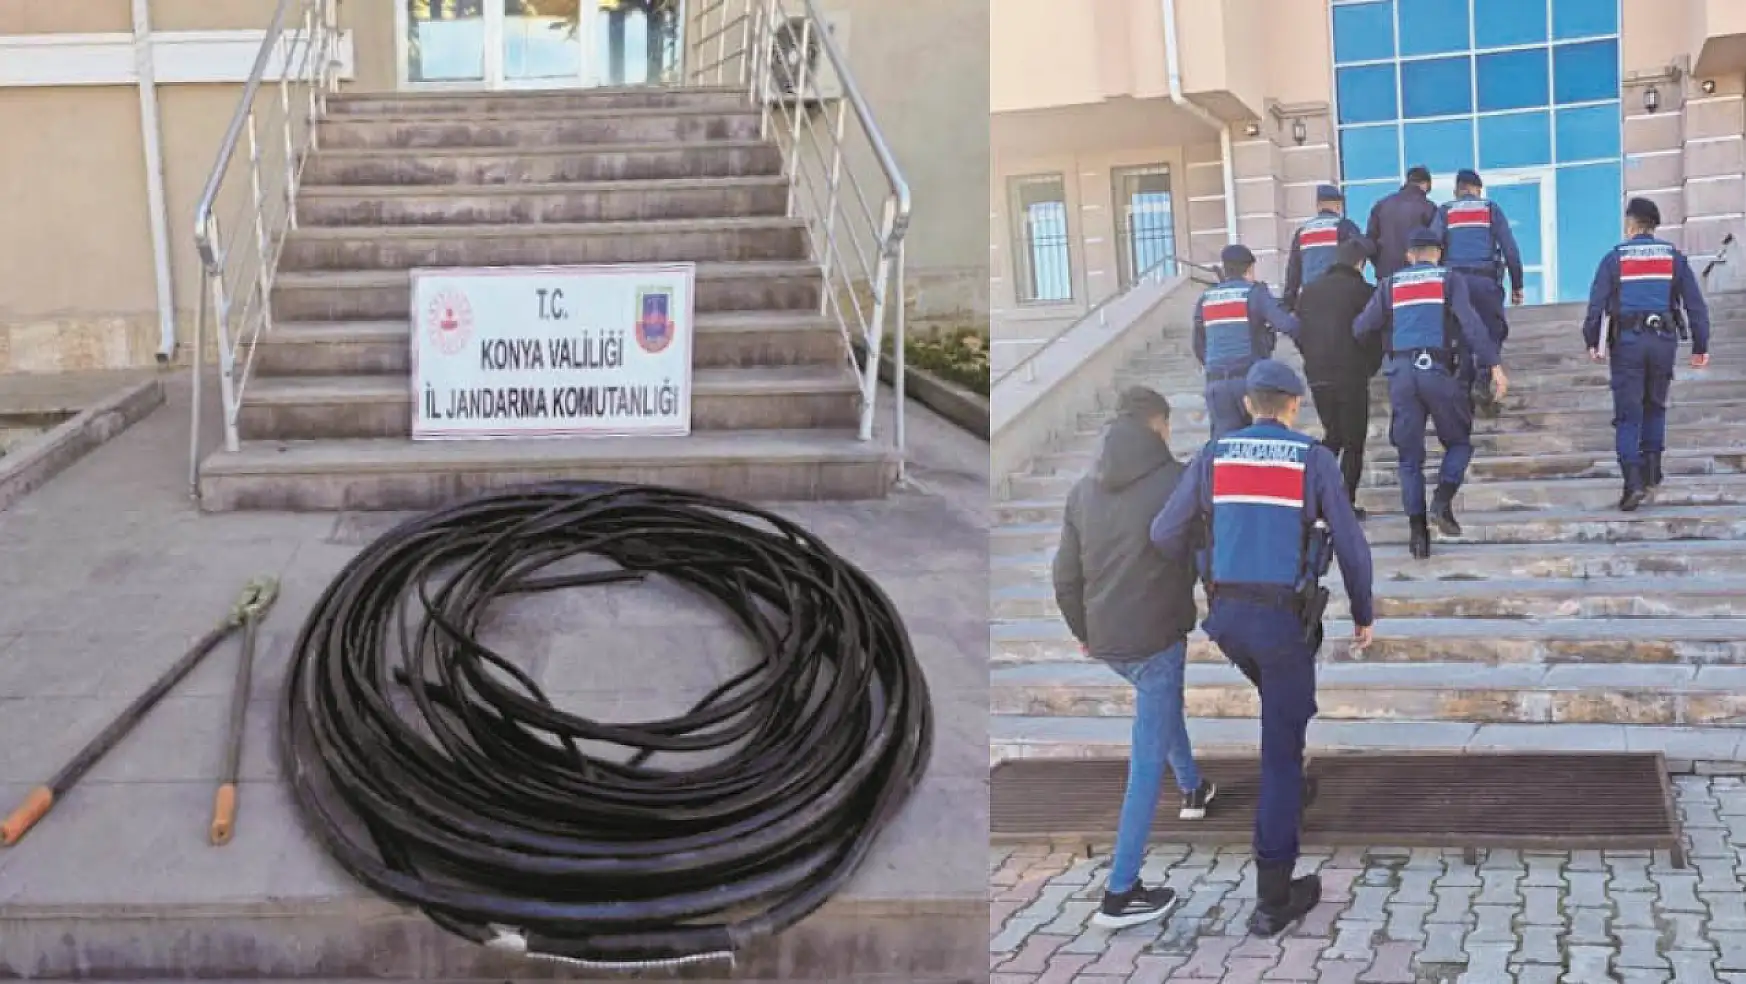 Konya'da kablo hırsızlığı: 3 şüpheli tutuklandı